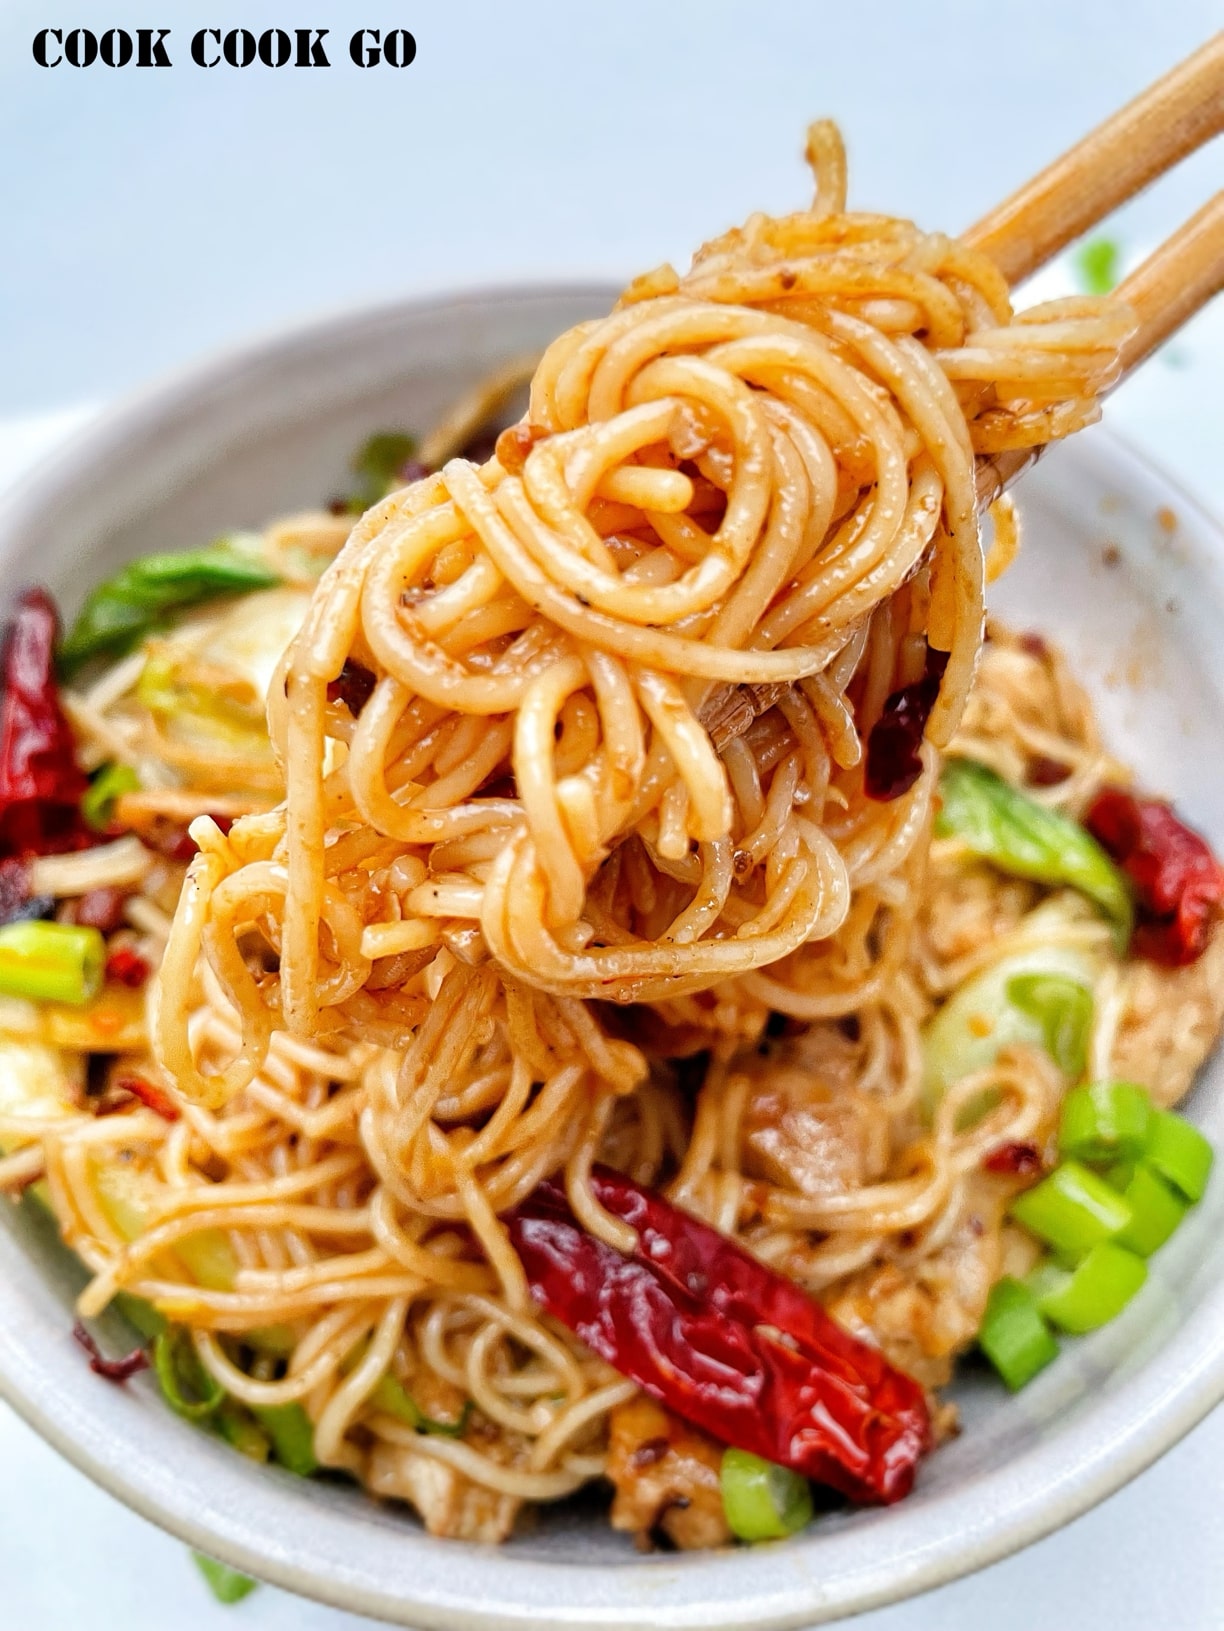 Sichuan chili pork noodles